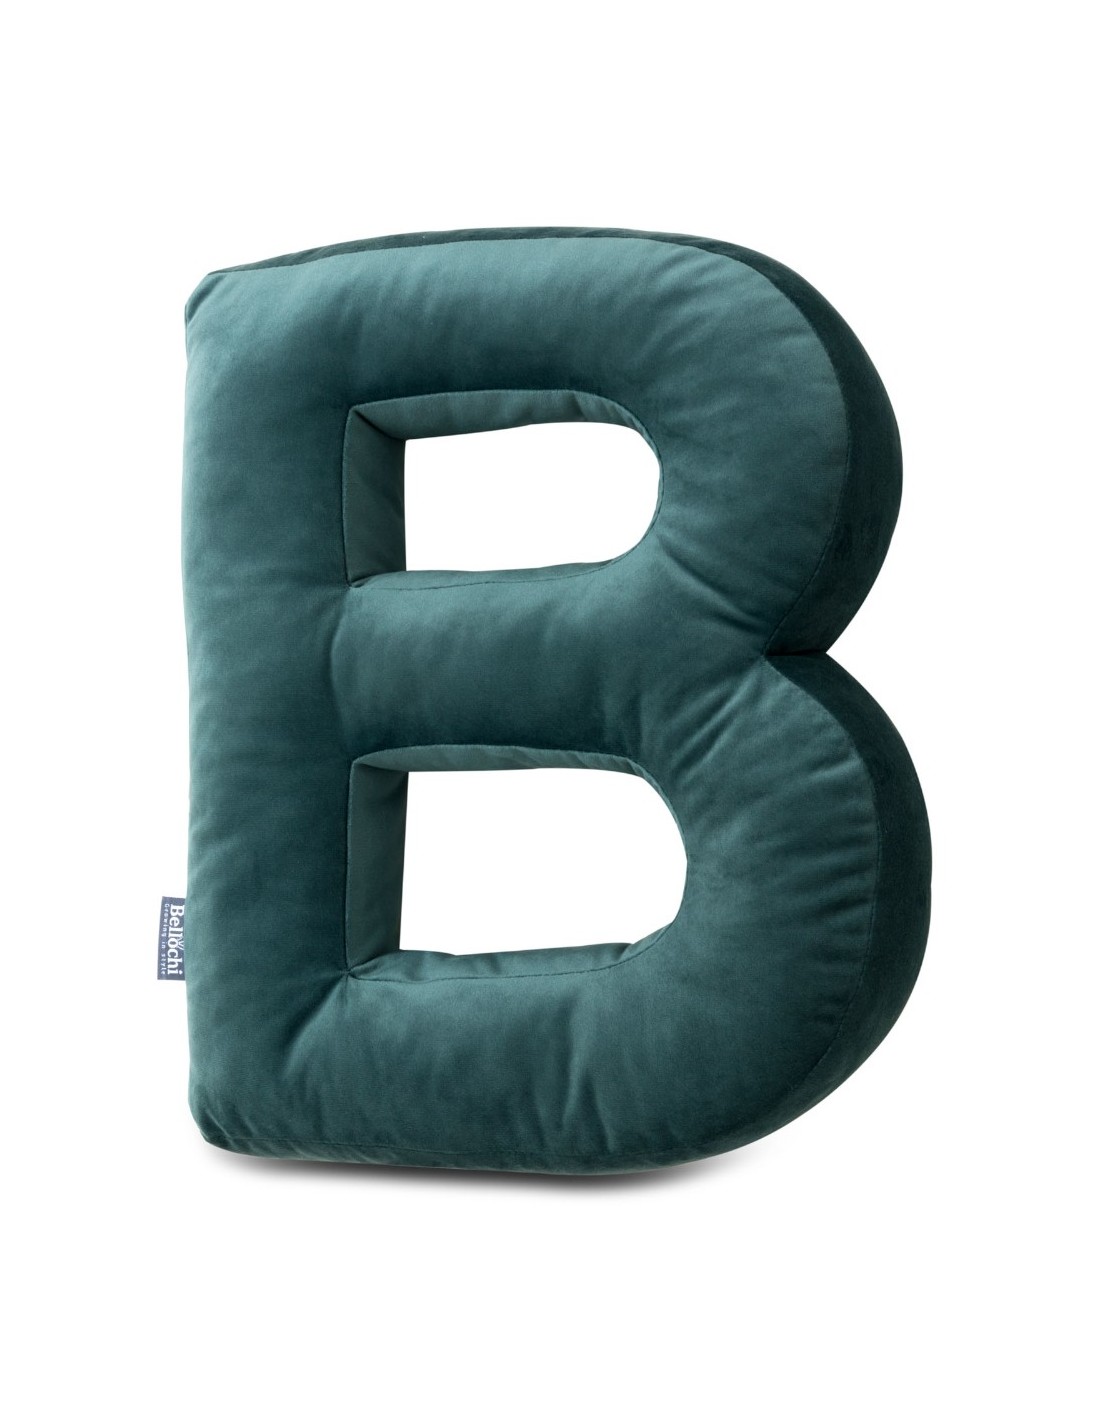 Cuscino decorativo in velluto a forma di lettera B di colore verde scuro